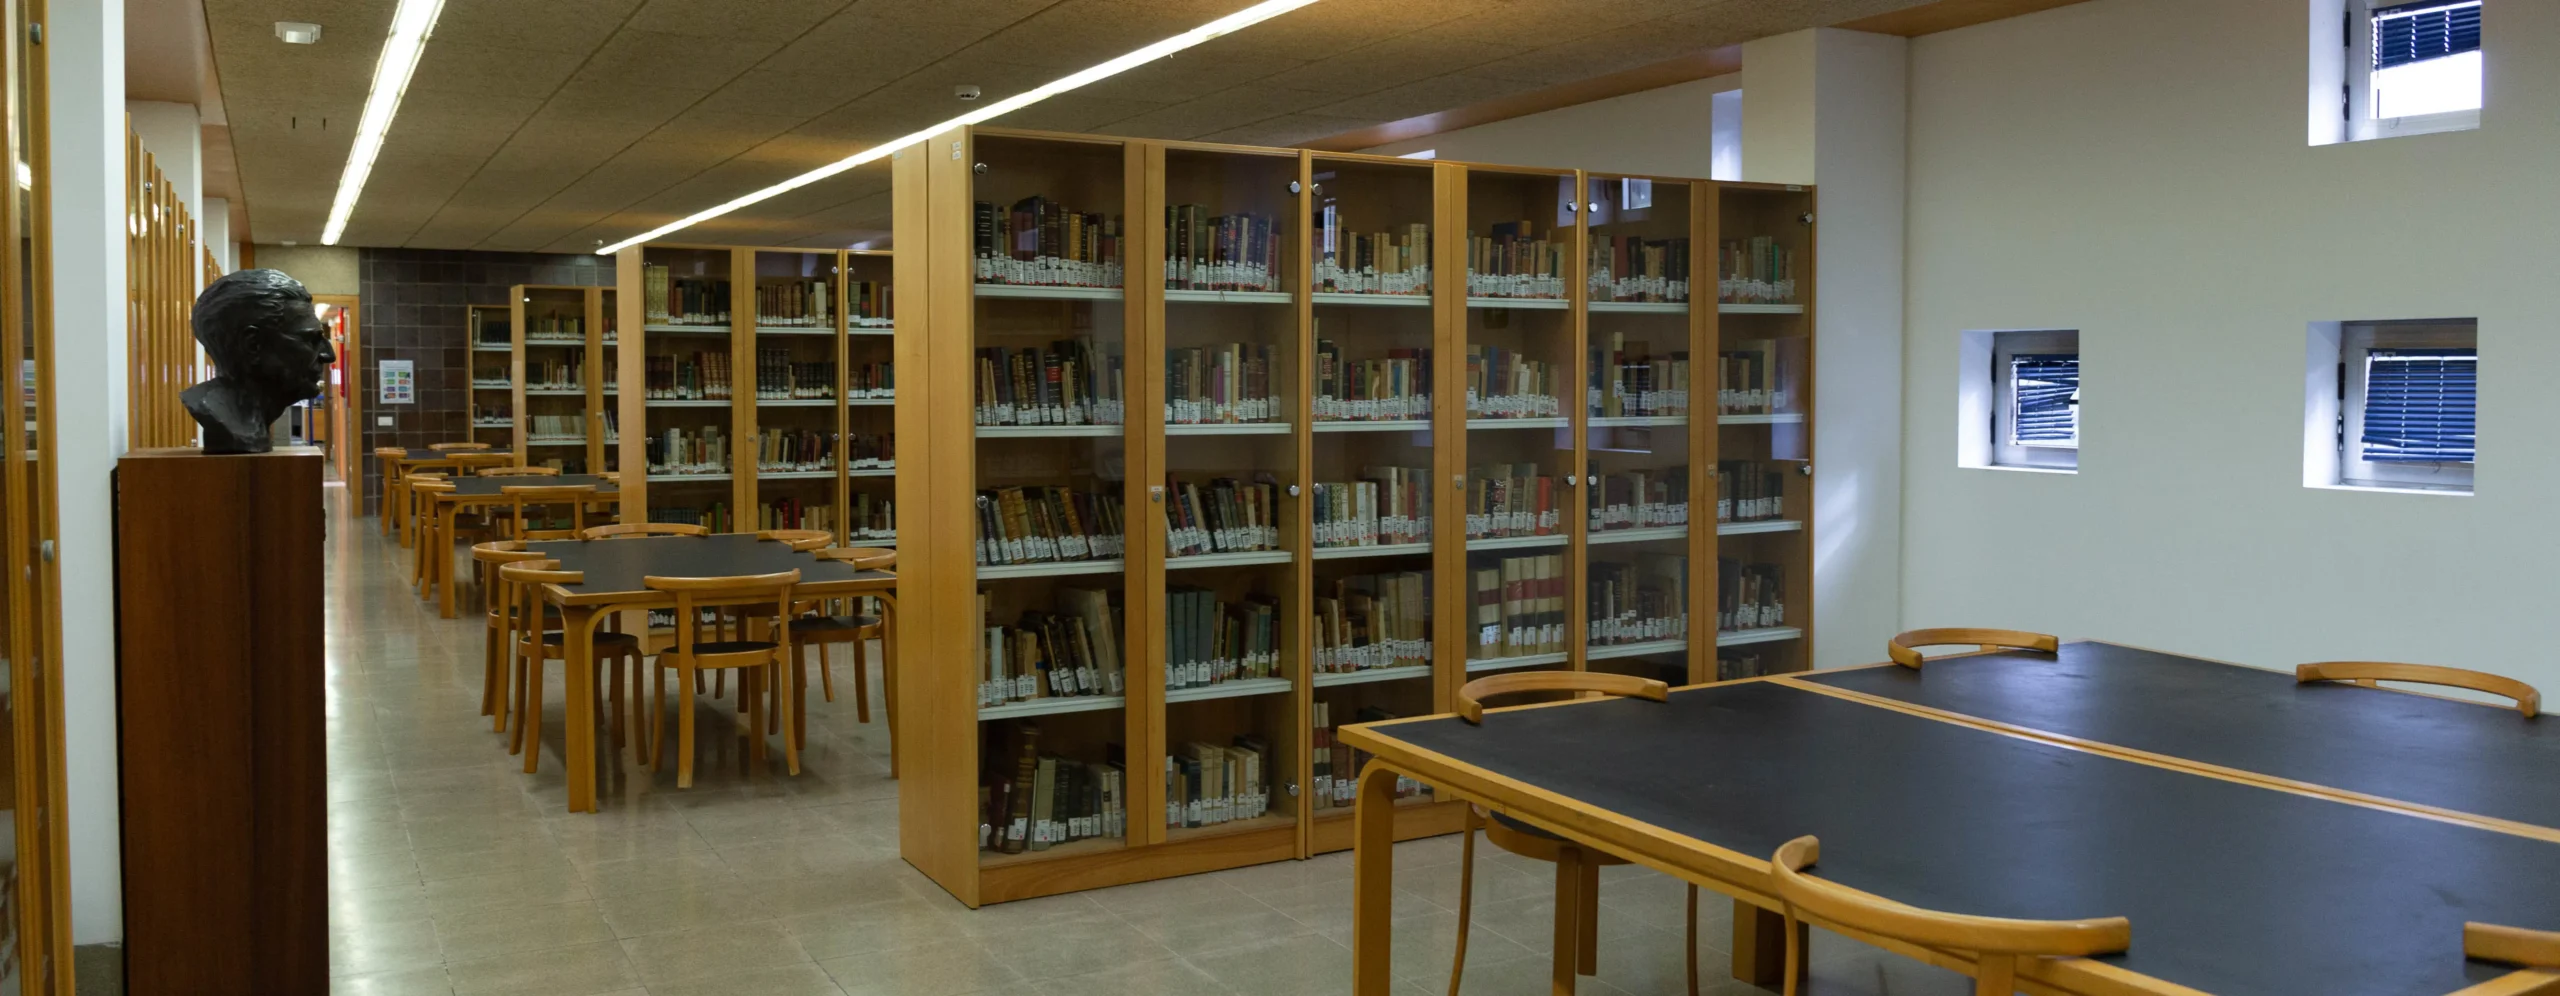 biblioteca campus universitario ulpgc - Que ofrecen las bibliotecas online de las universidades